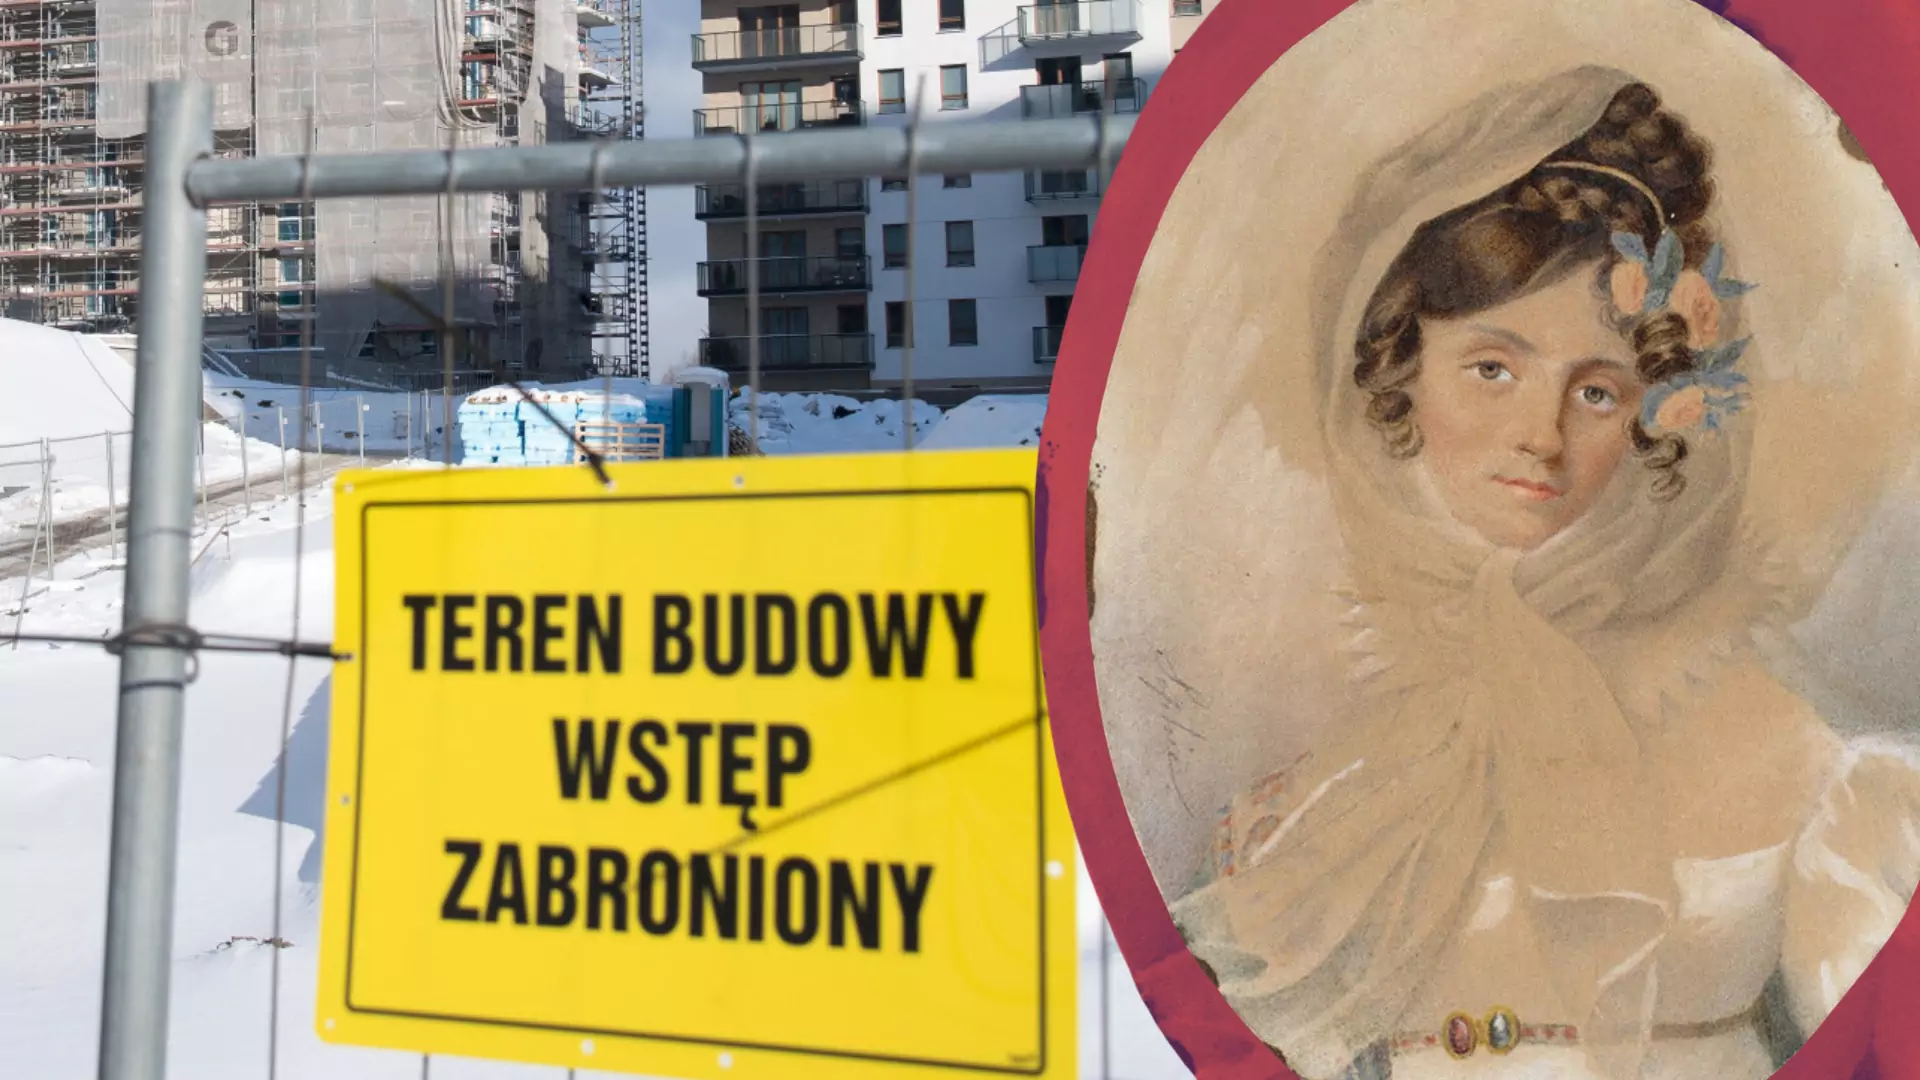 Tylko 6 proc. ulic w Warszawie ma kobiecą patronkę. "To istotny problem, nie fanaberia"